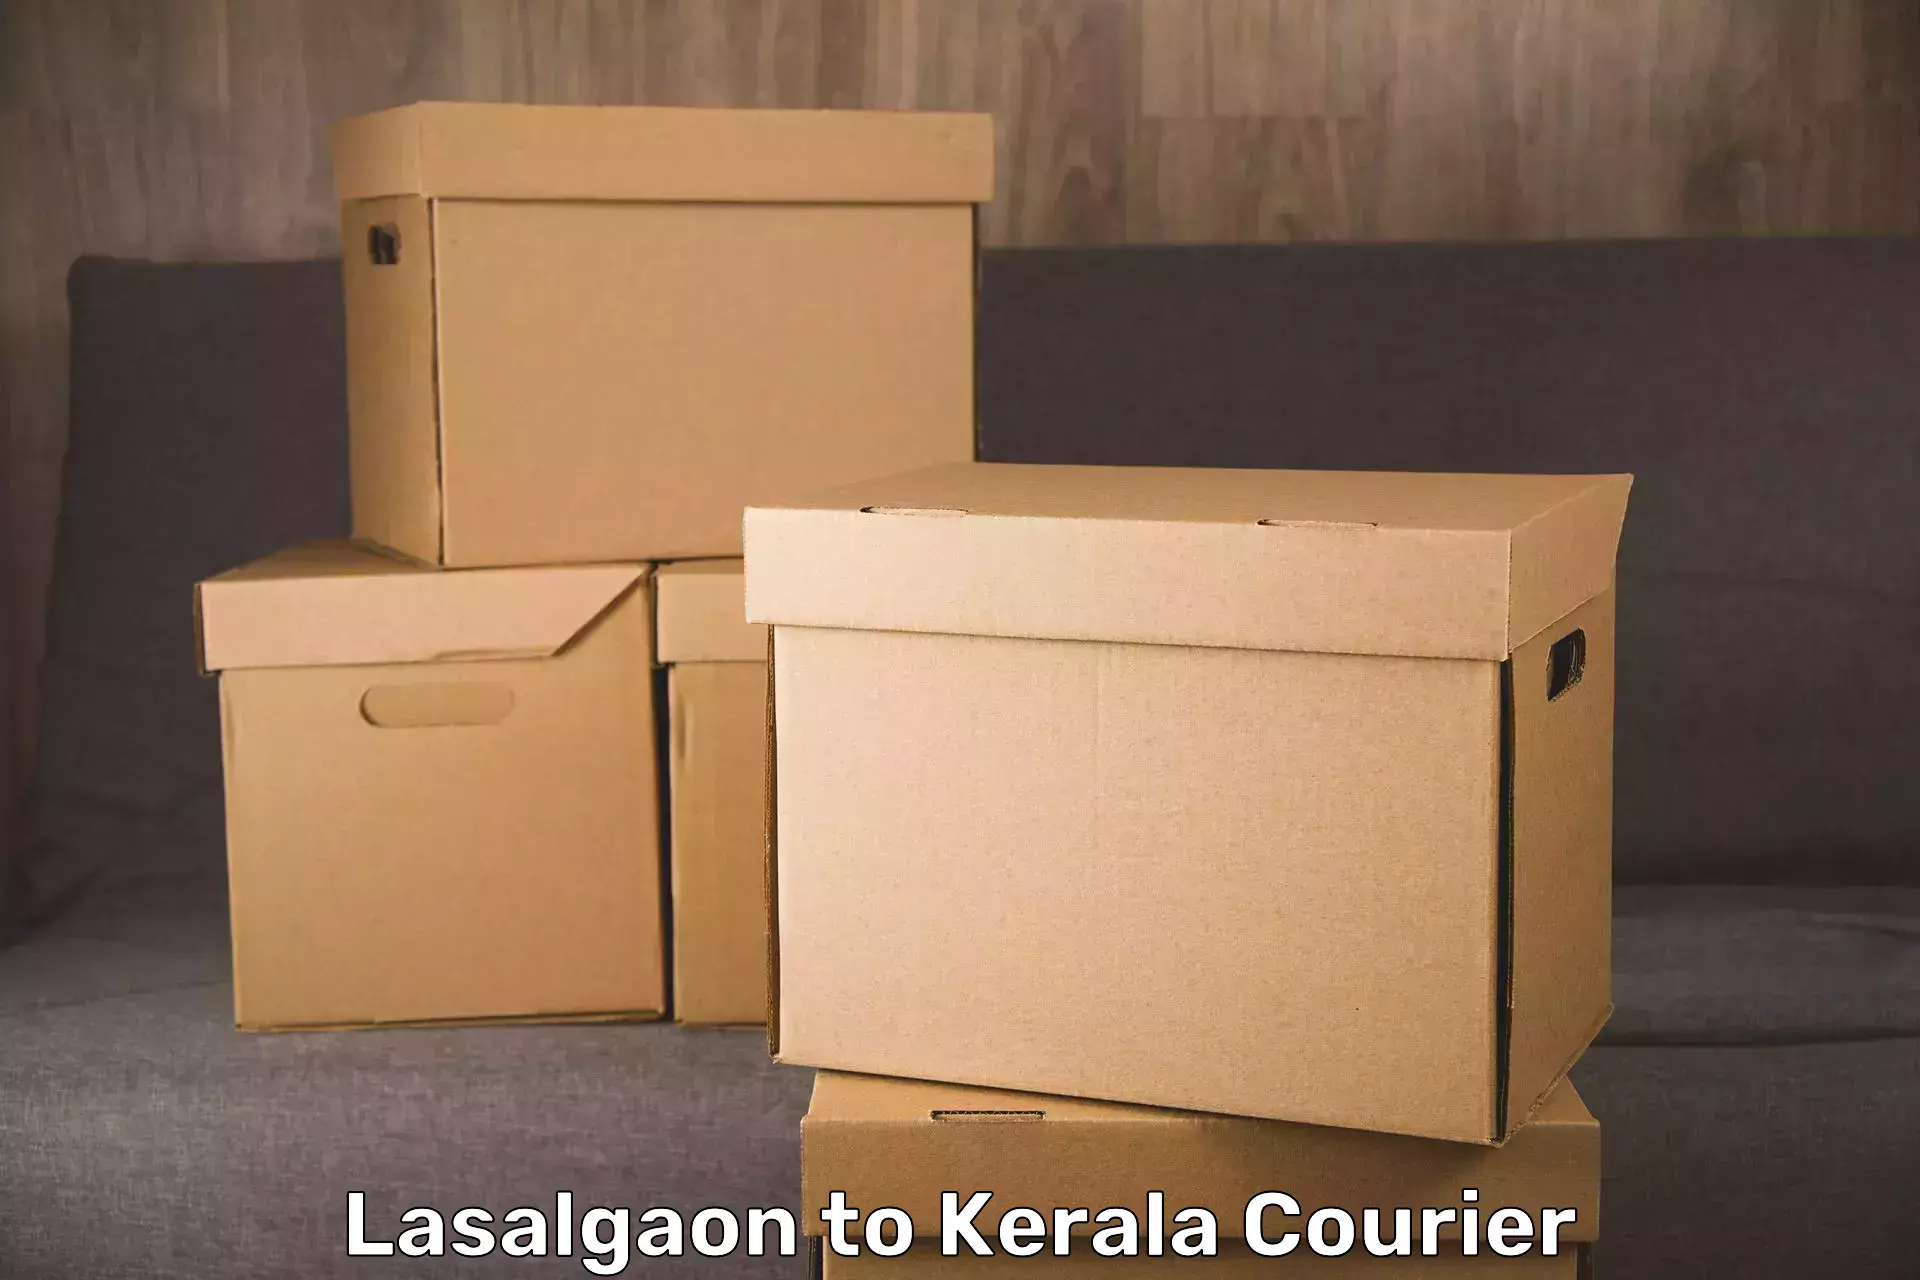 Round trip baggage courier Lasalgaon to Kottayam